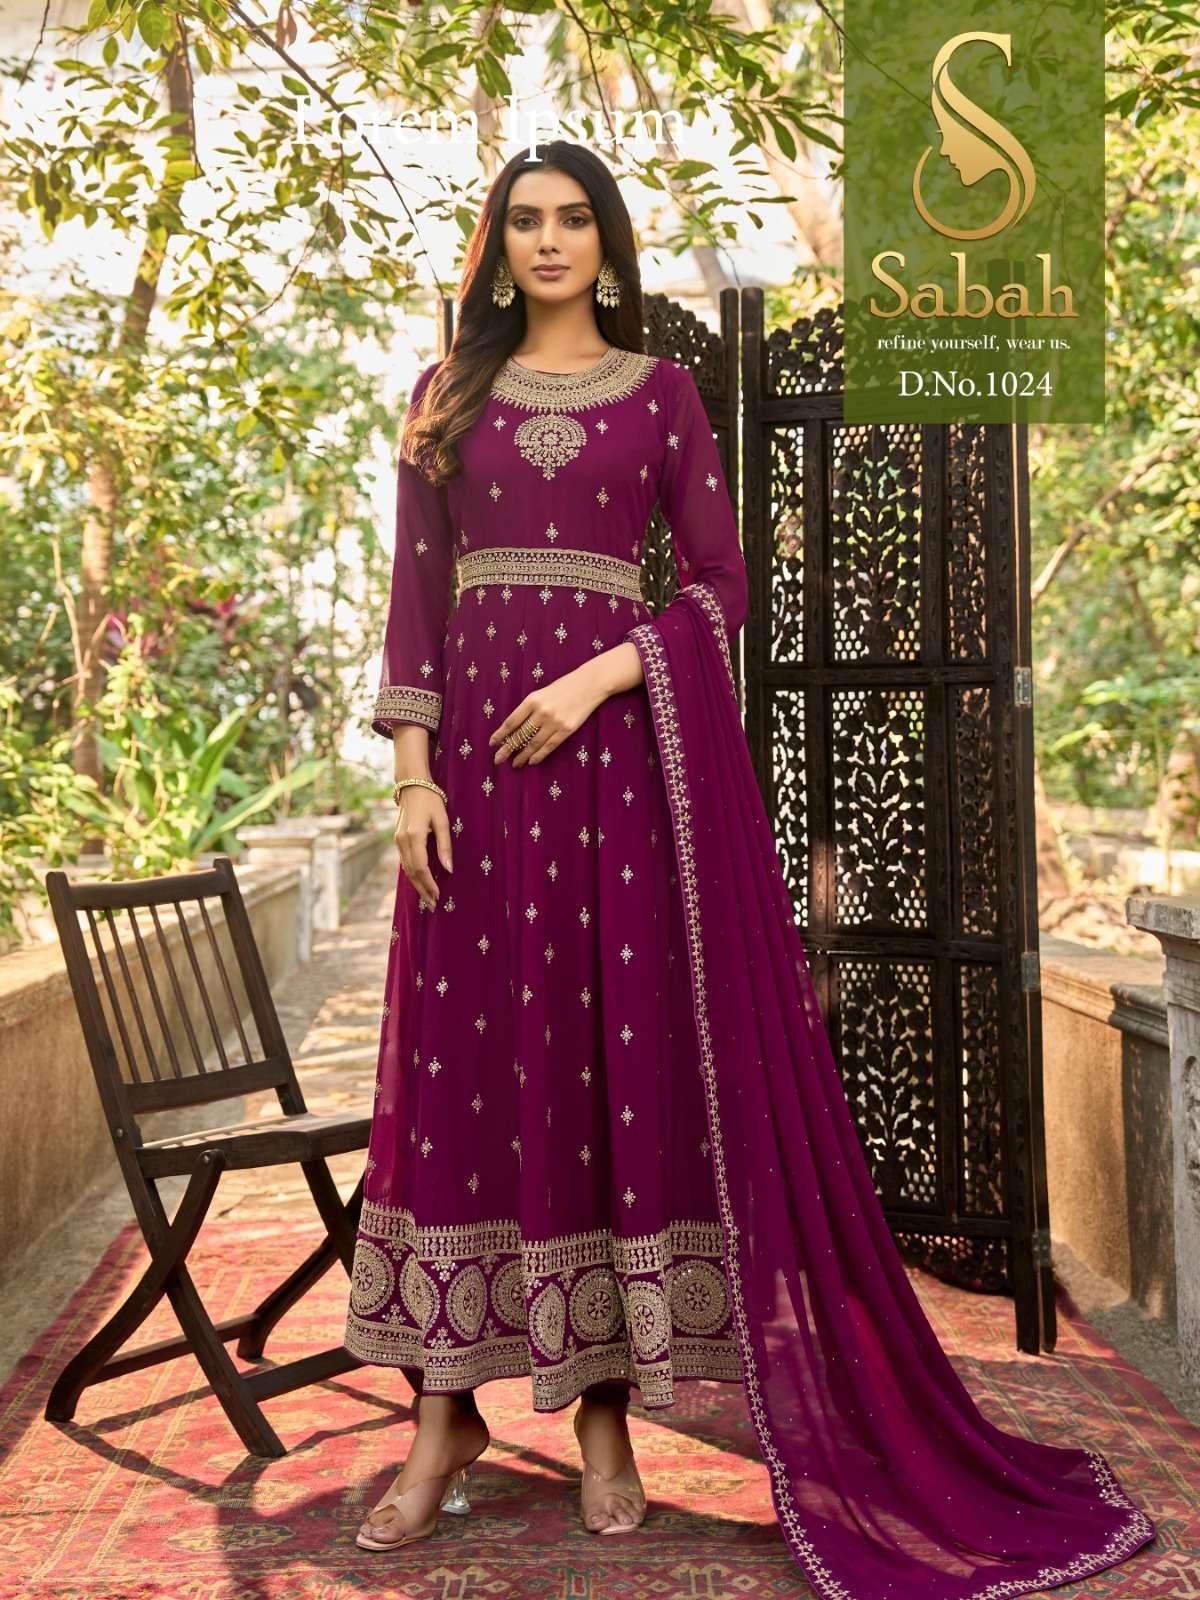 Fk Fashion Sabah Zaina 1024 Fancy Pakistani Suit Supplier